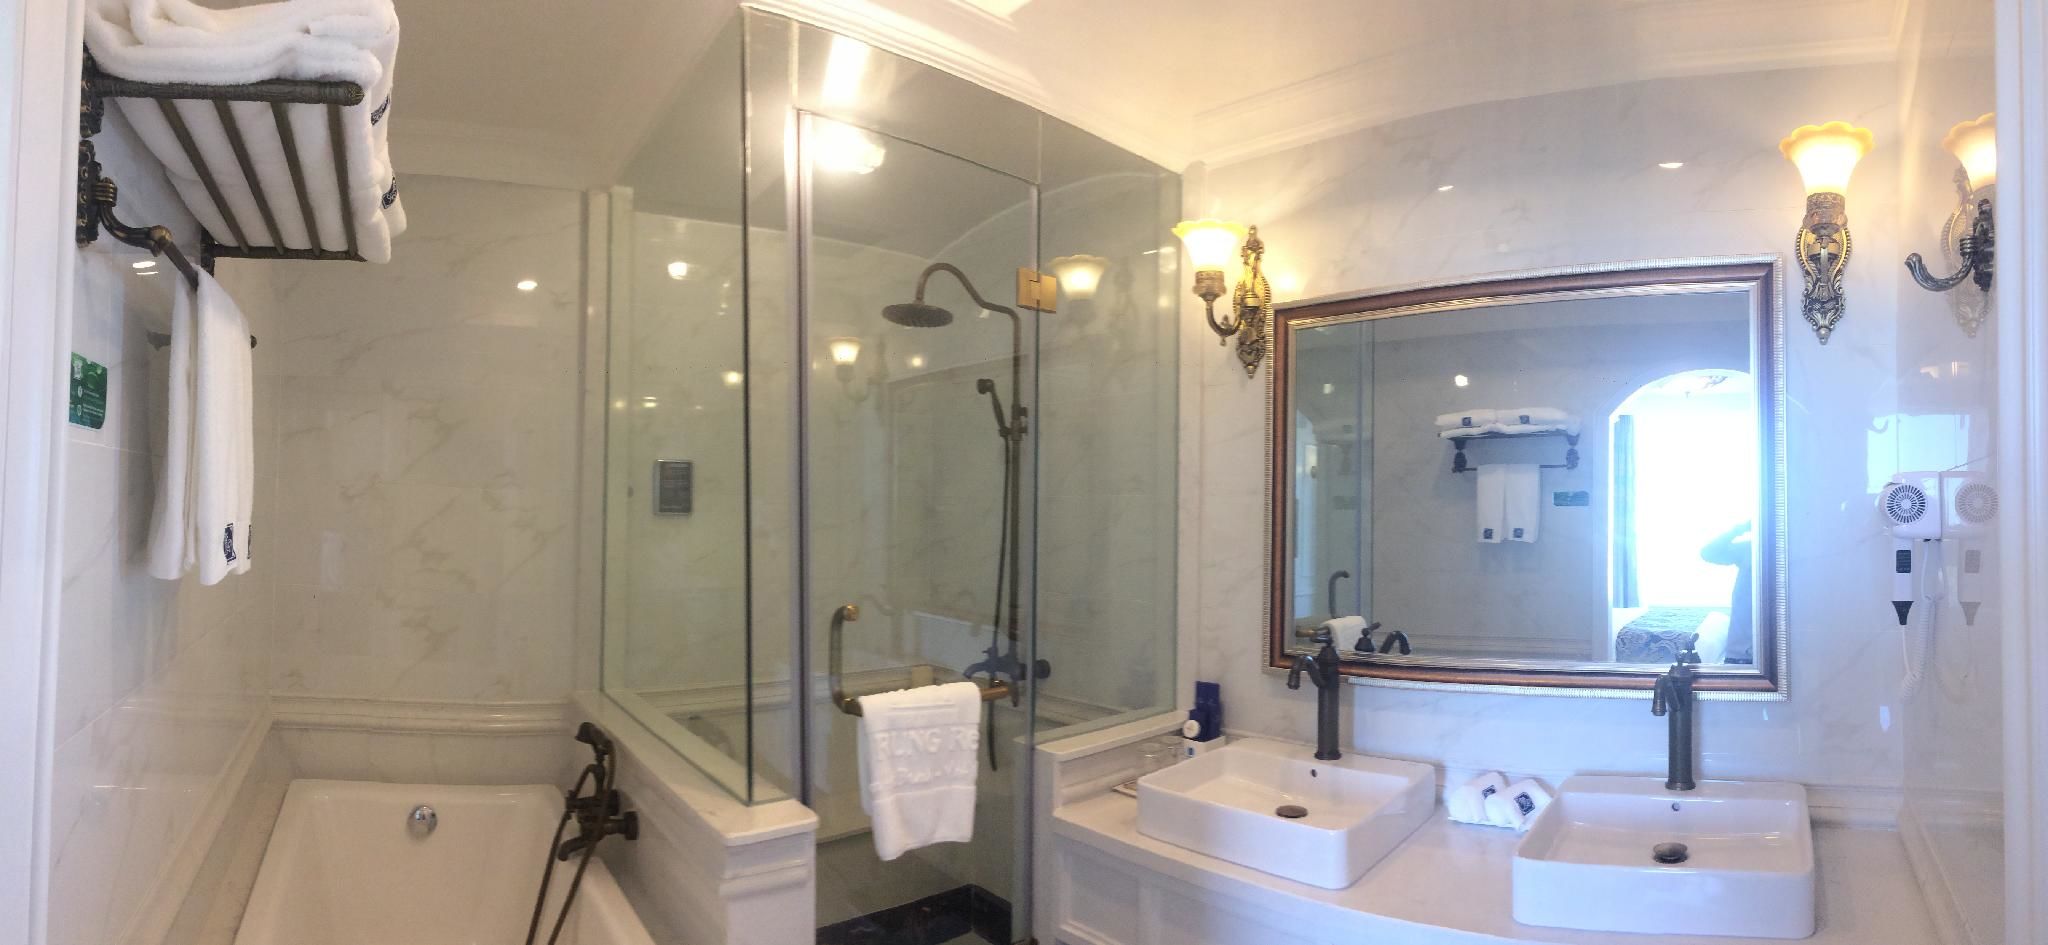 Phòng tắm tại dự án Lan Rừng Phước Hải